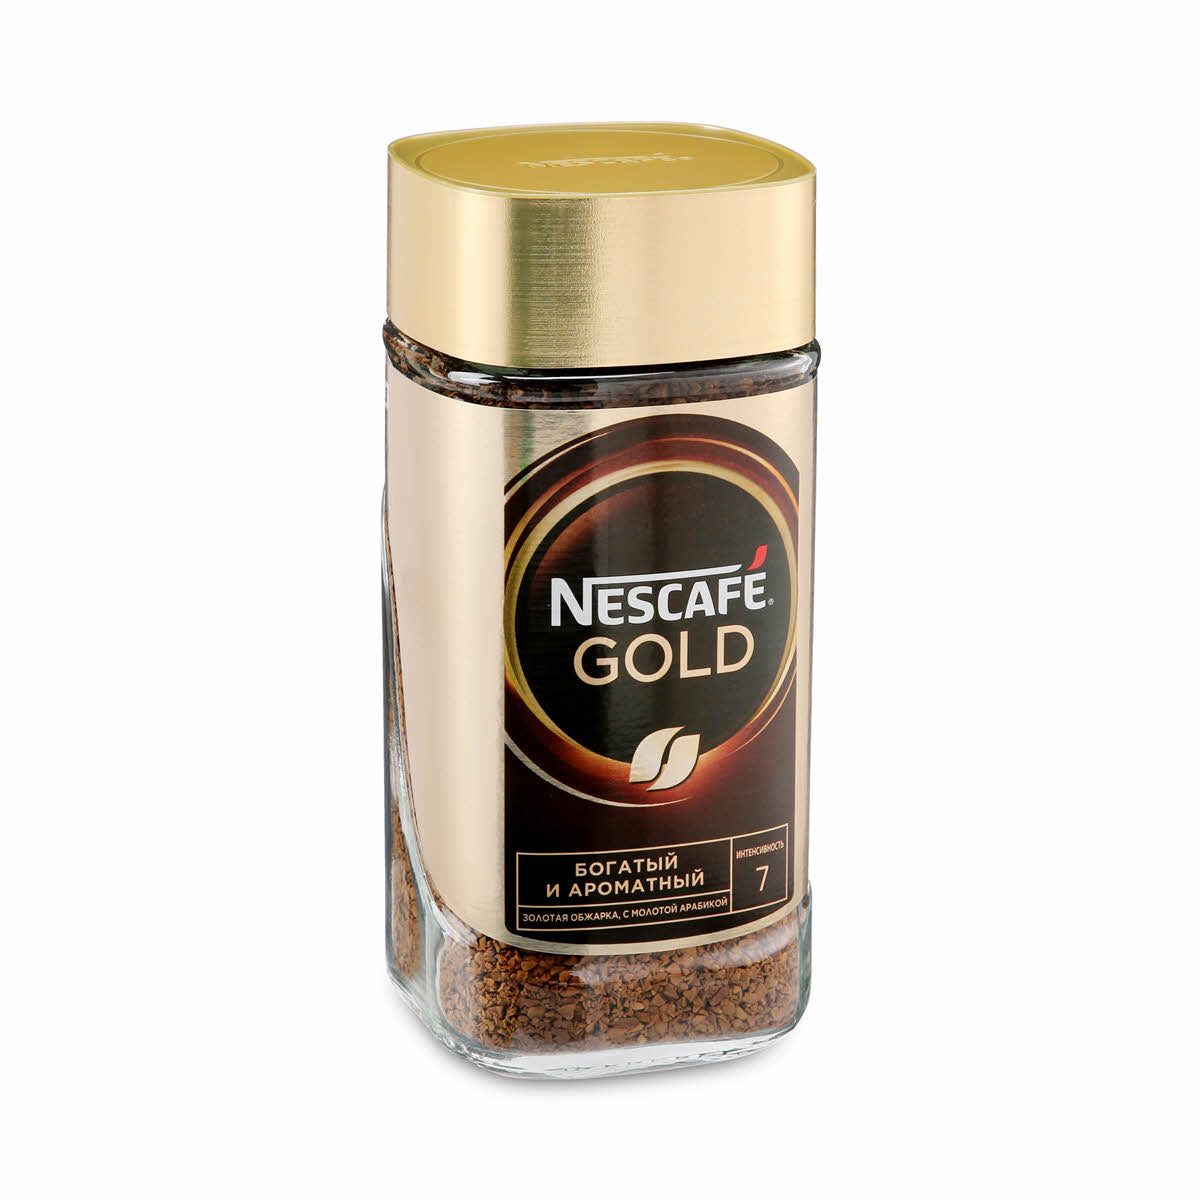 Nescafe Gold Coffee Intensity-7 (190 g) Nescafe